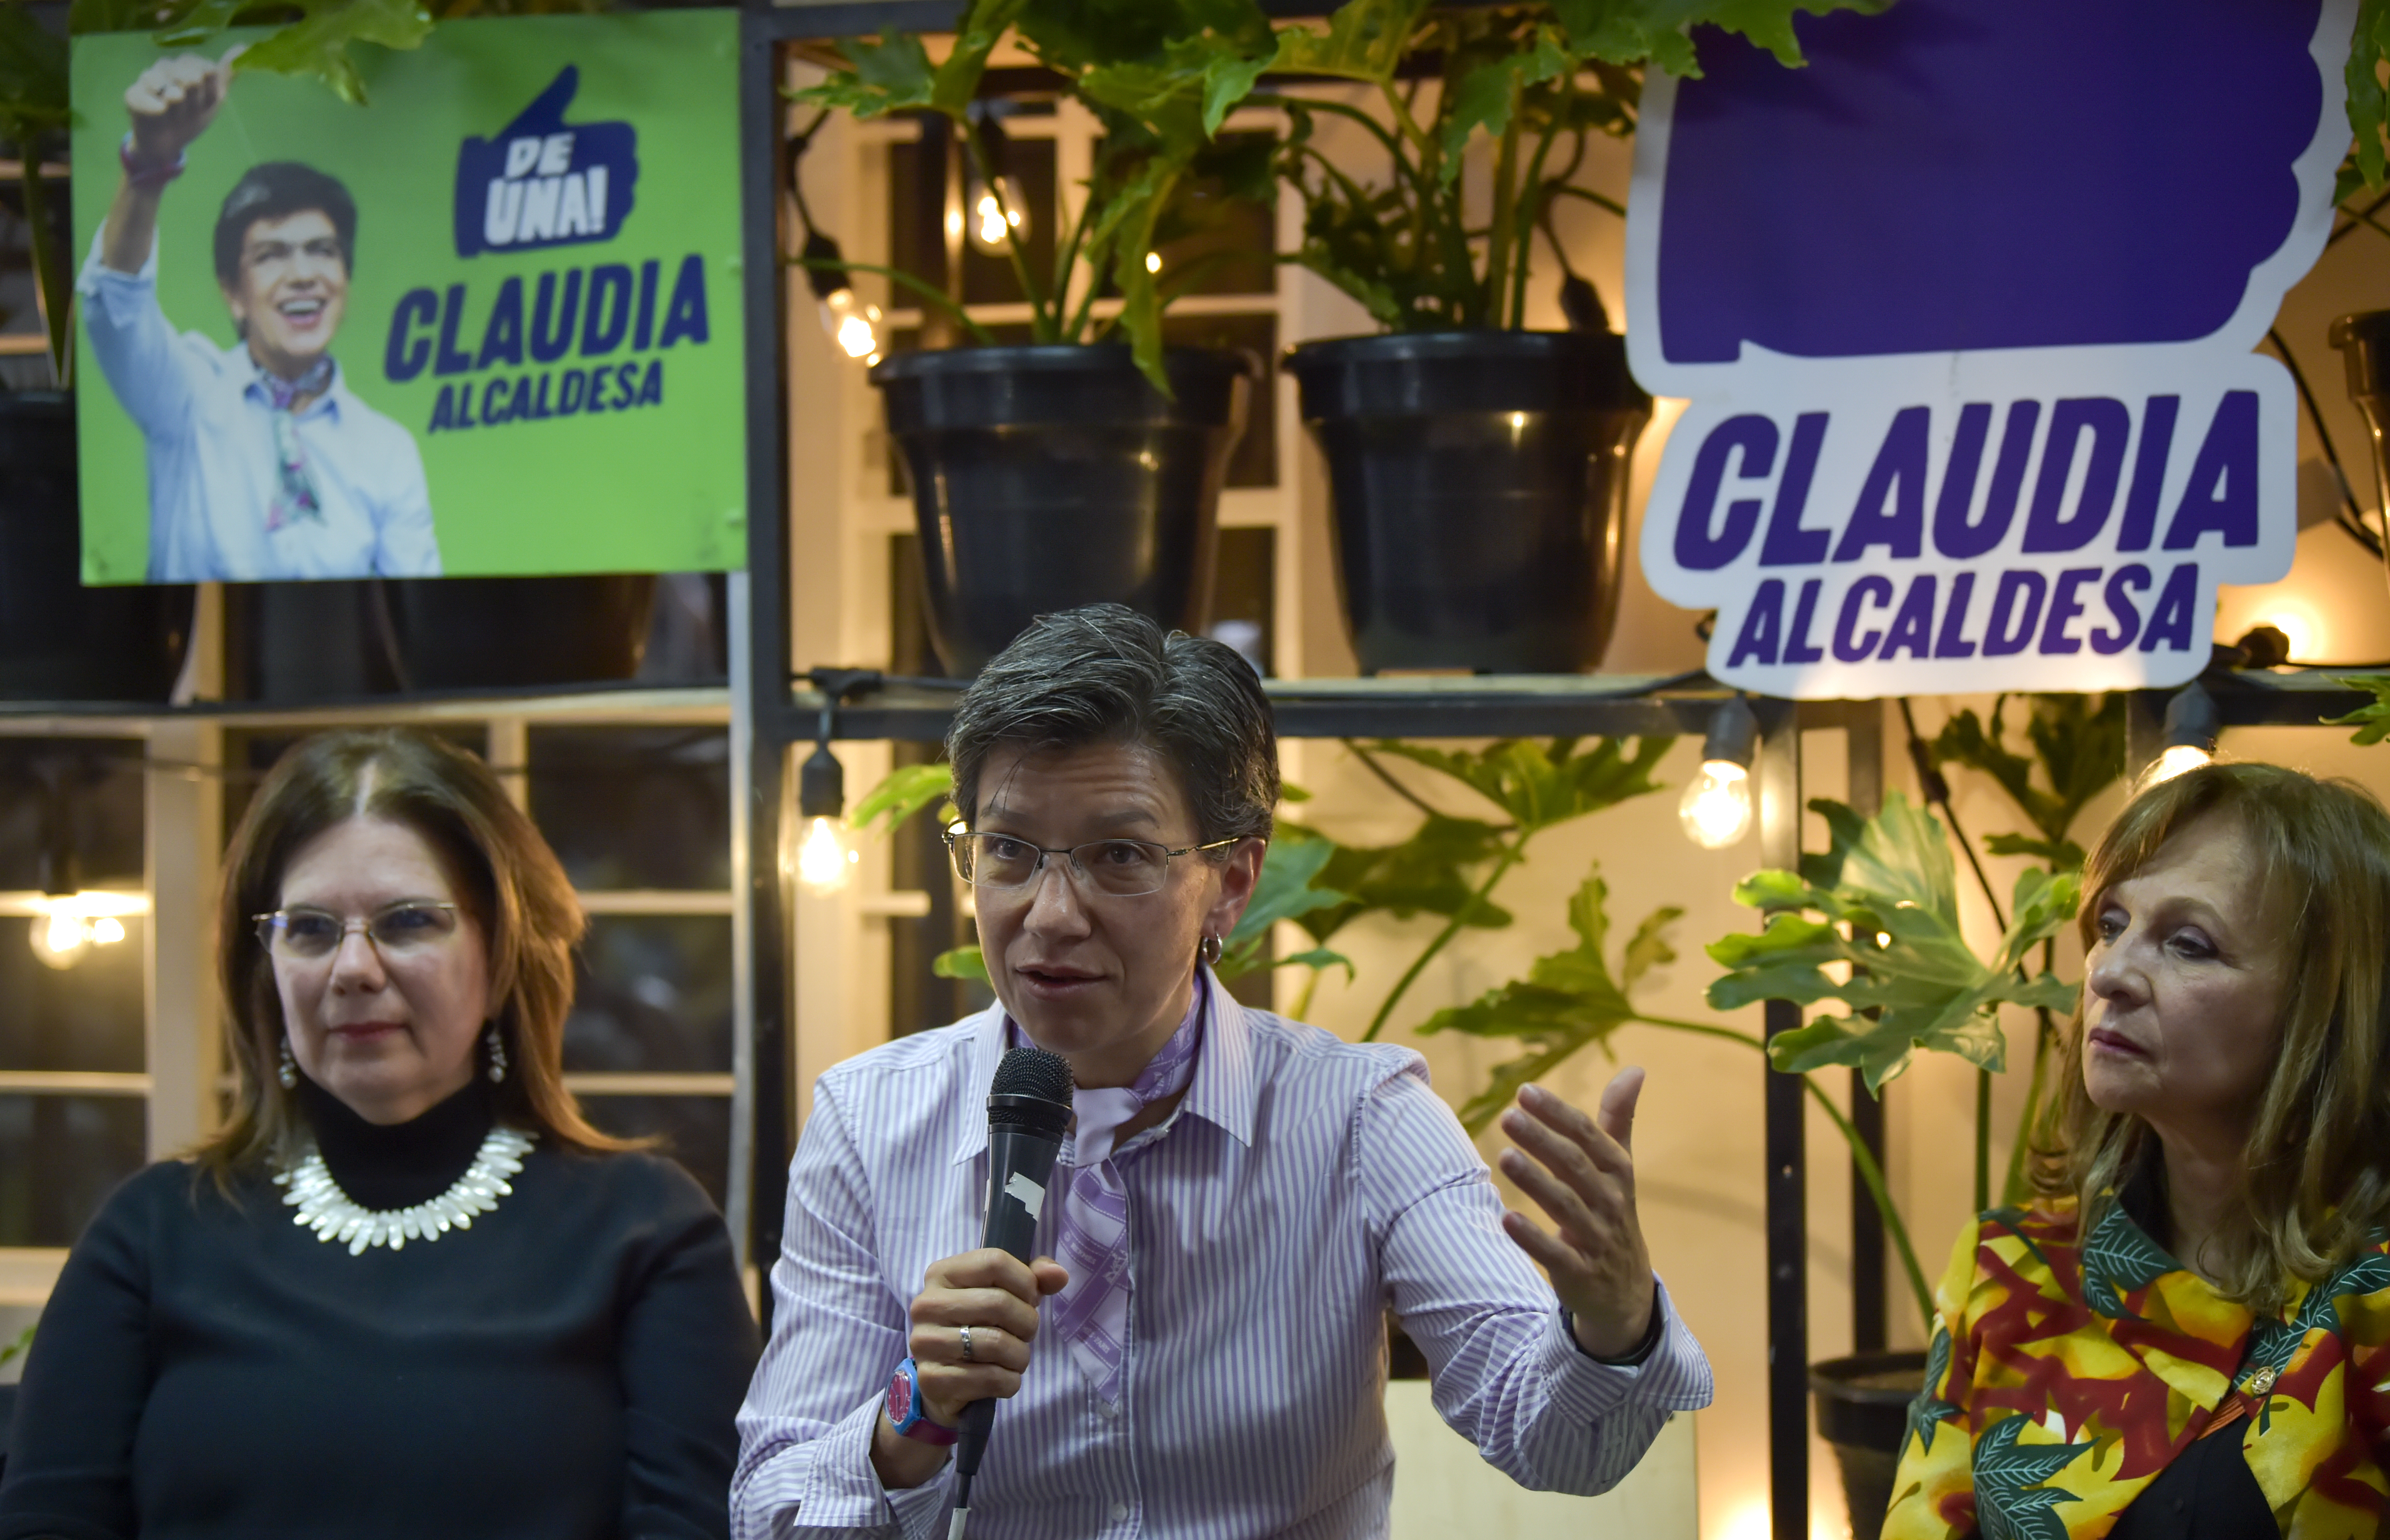 Claudia López: Ganó la decisión de desterrar la corrupción y el populismo de Bogotá